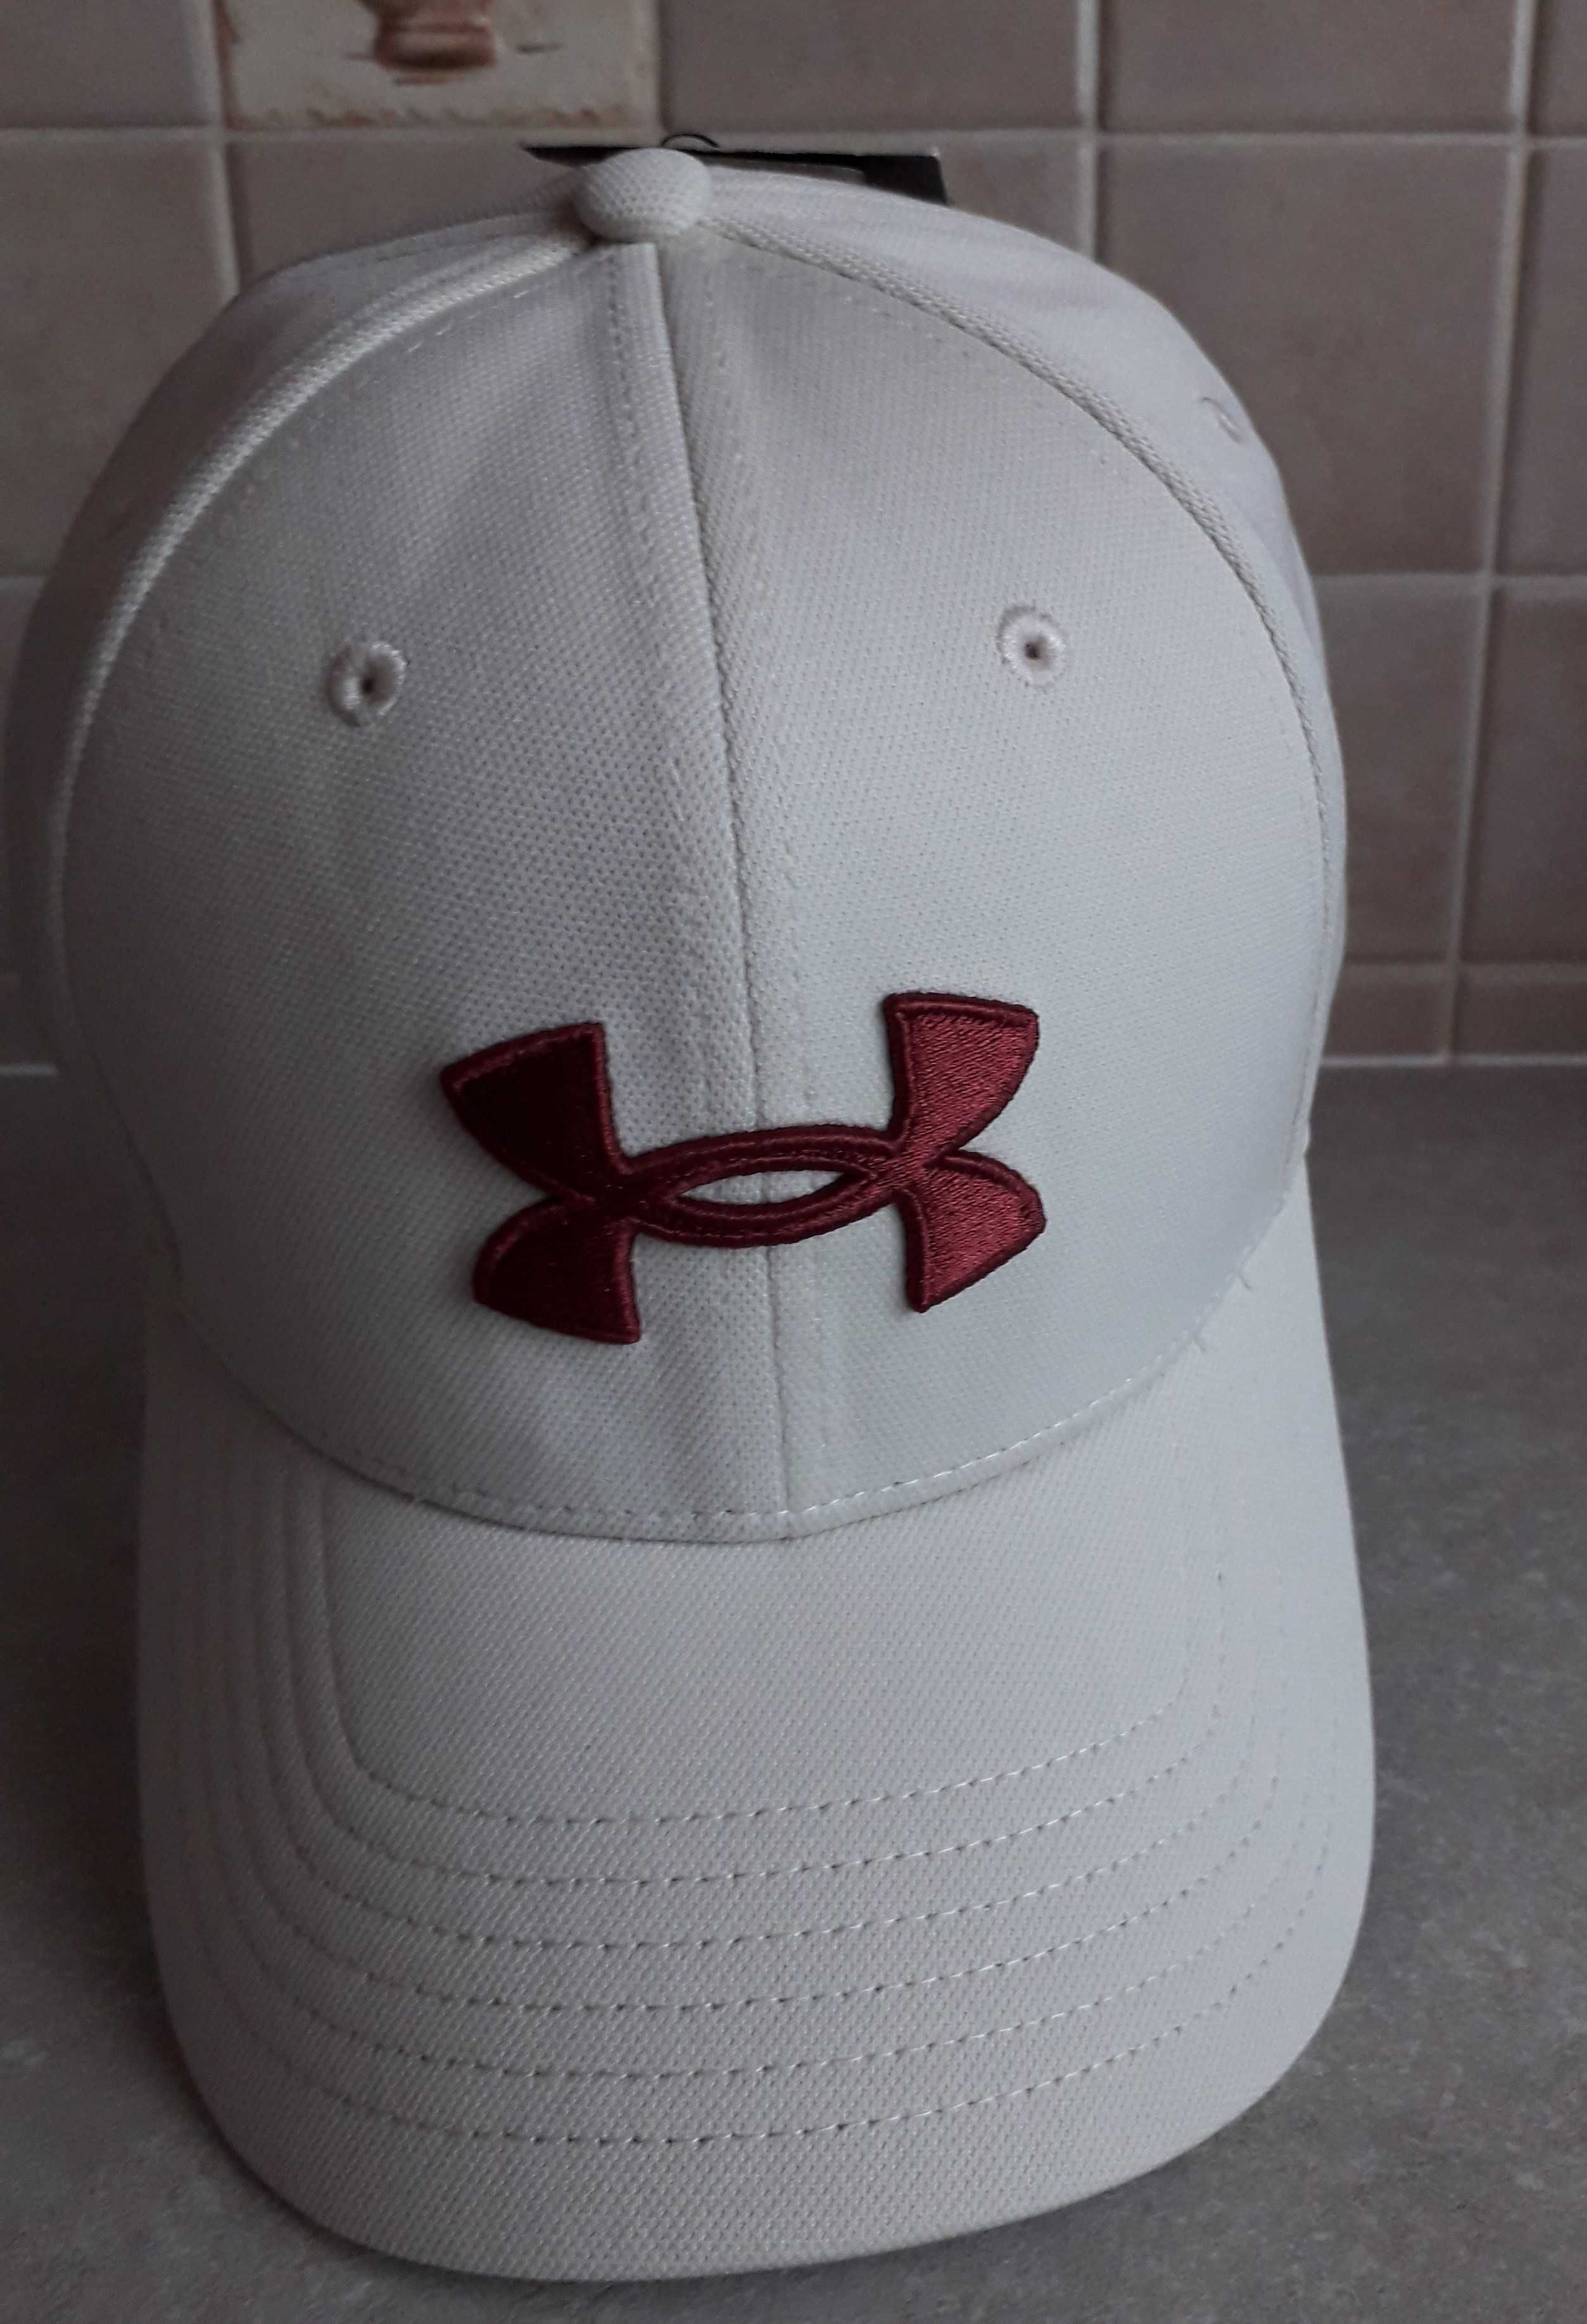 czapka z daszkiem UNDER ARMOUR jasnobeżowa/kremowa, L/XL 58,4-61,6 cm